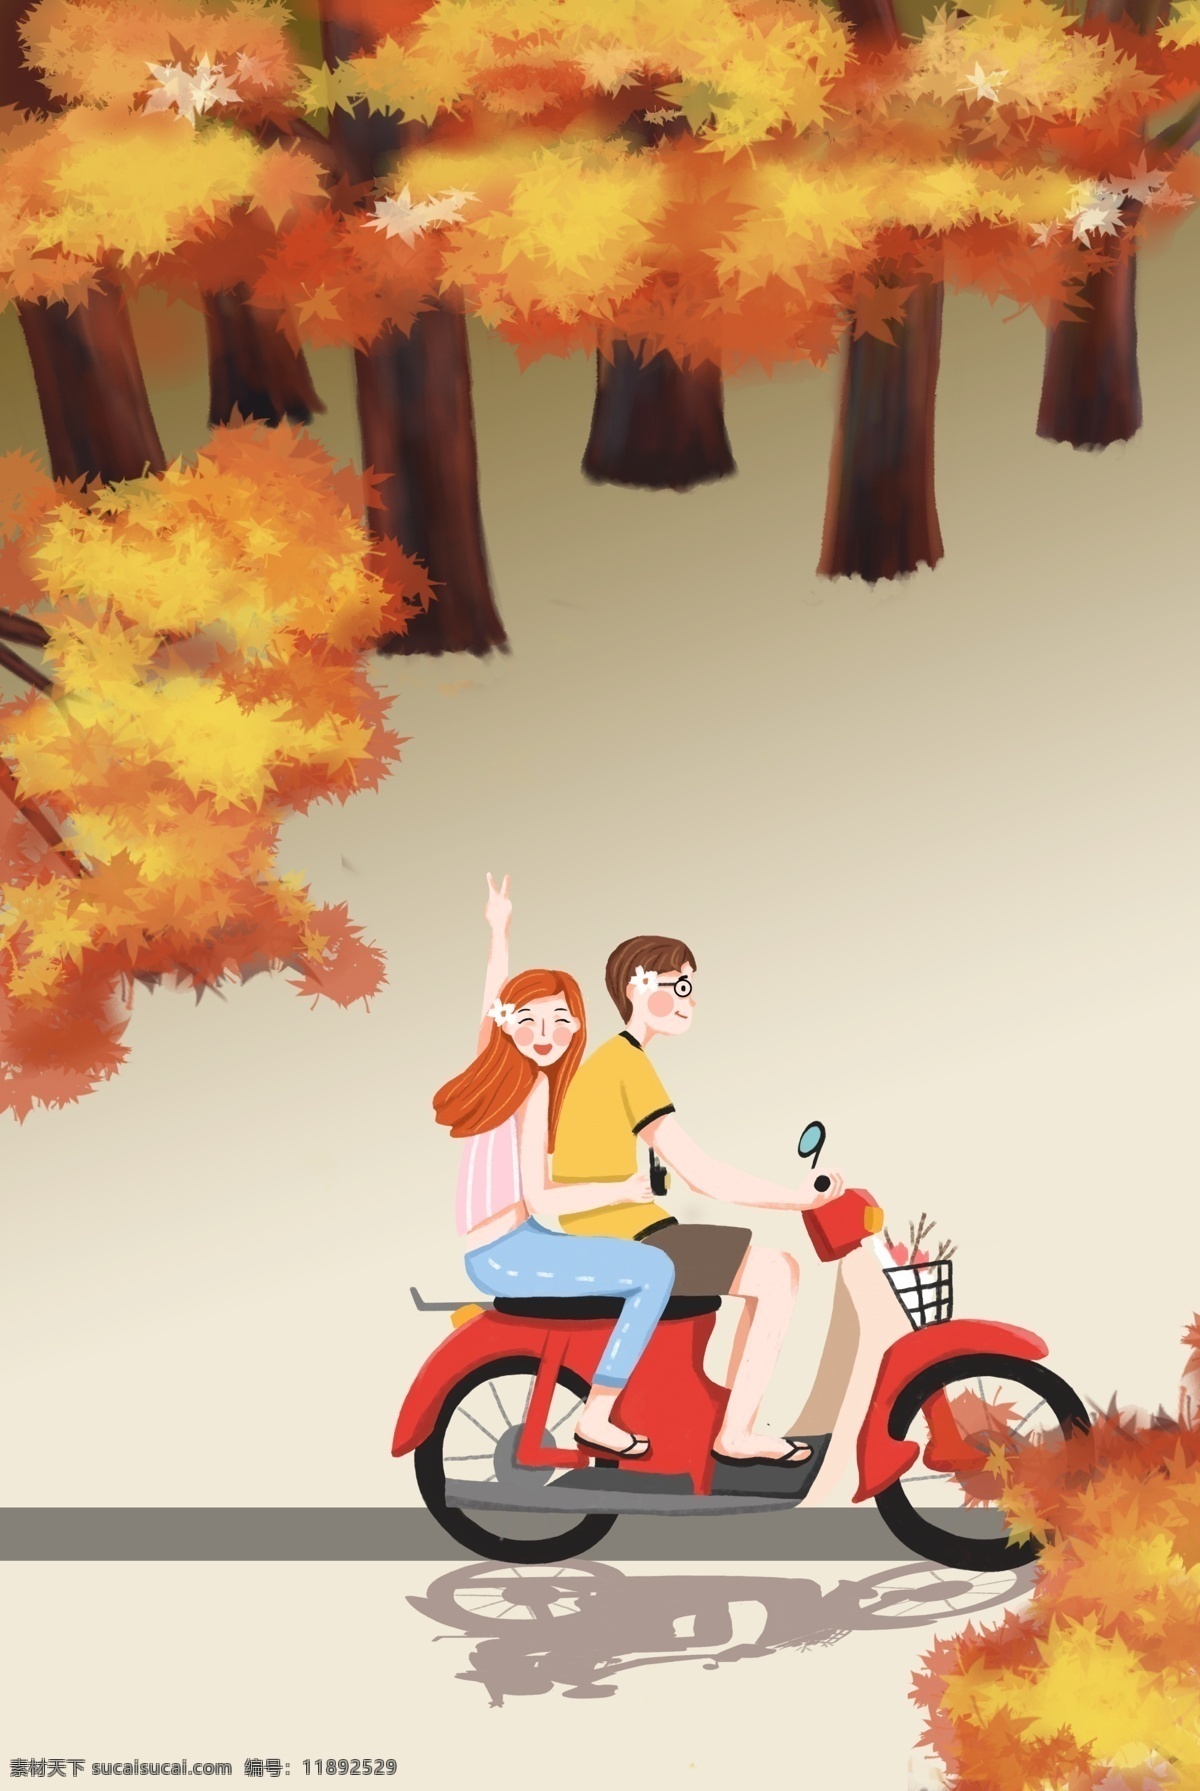 秋天九月 情侣 黄色 卡通背景 海报下载 秋天 九月 摩托车 郊游 树林 温馨 可爱